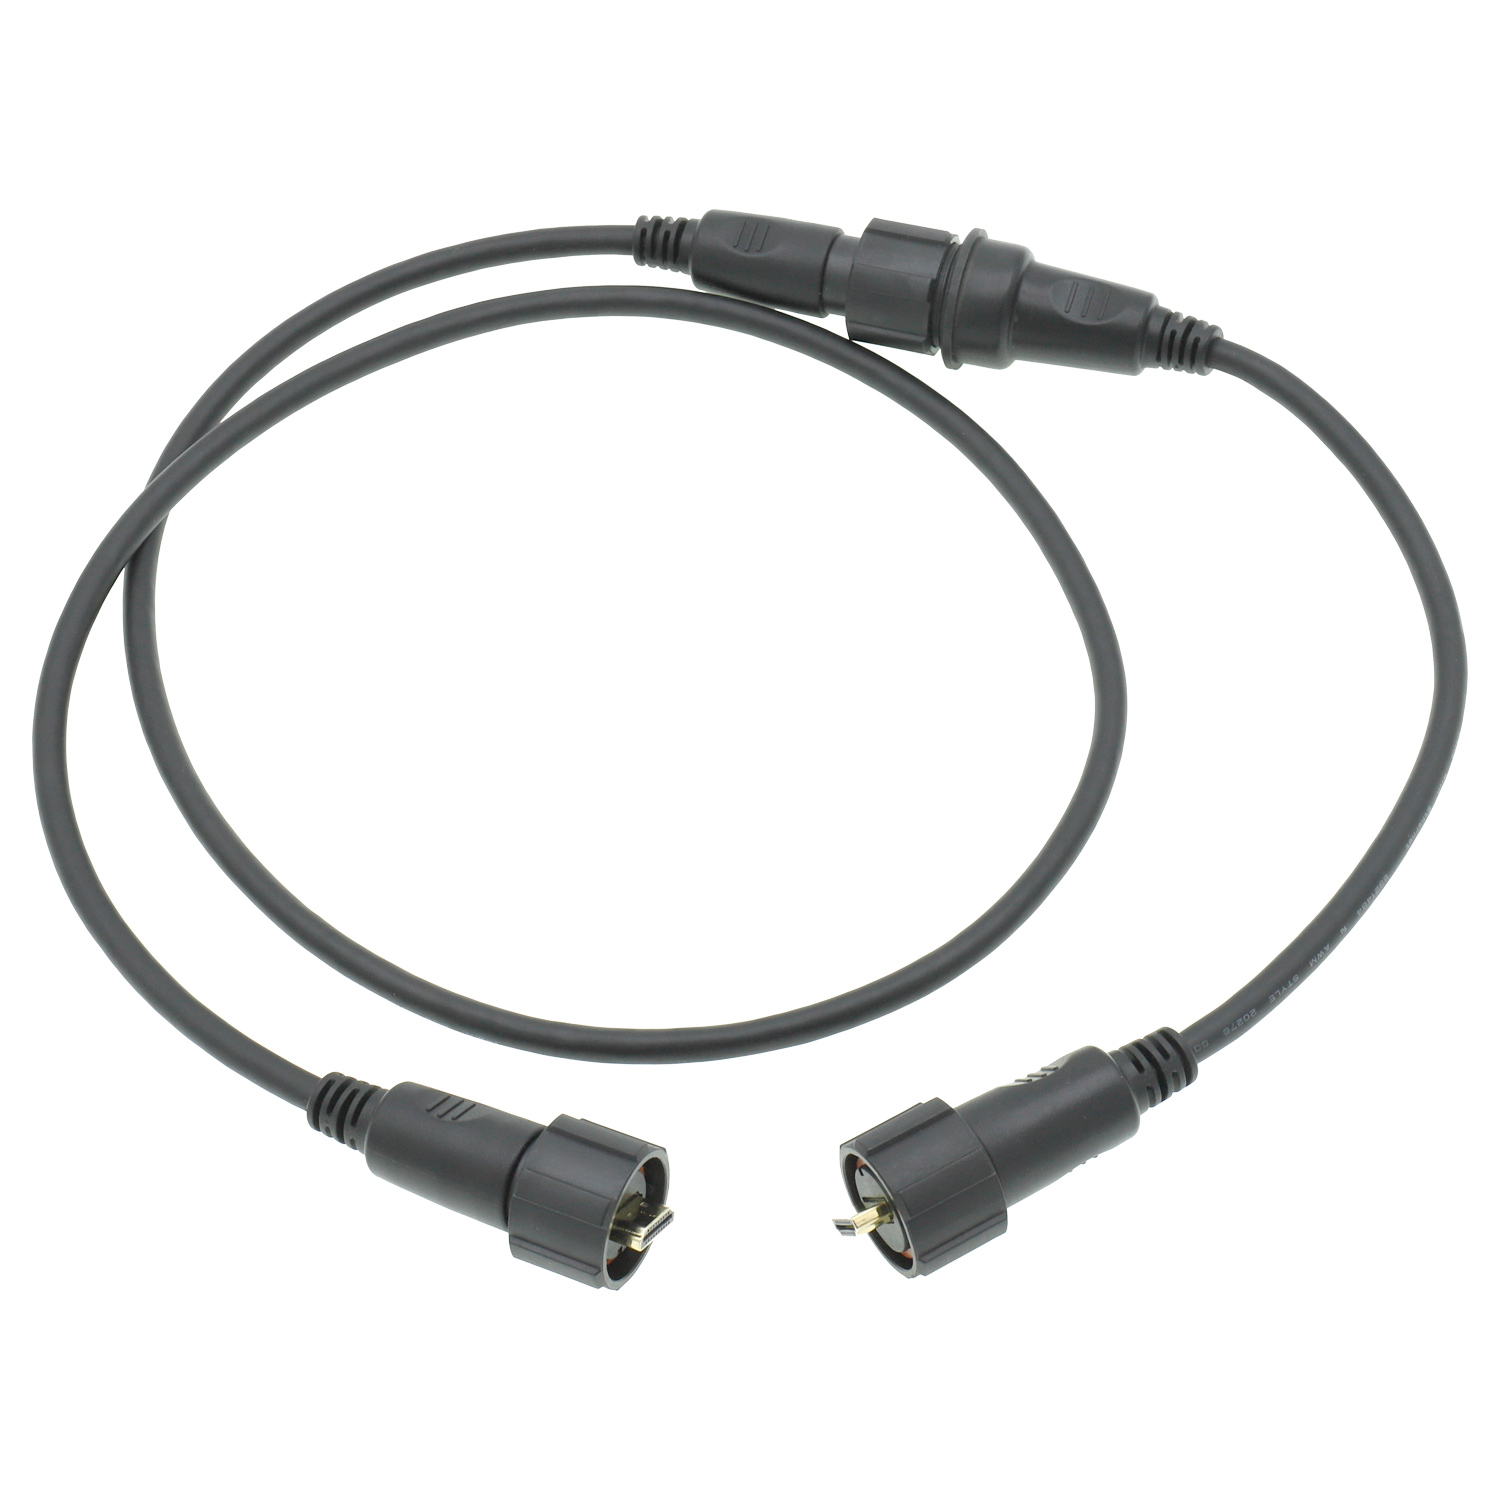 Изготовленный на заказ жгут проводов электронного телевидения IP68 HDMI